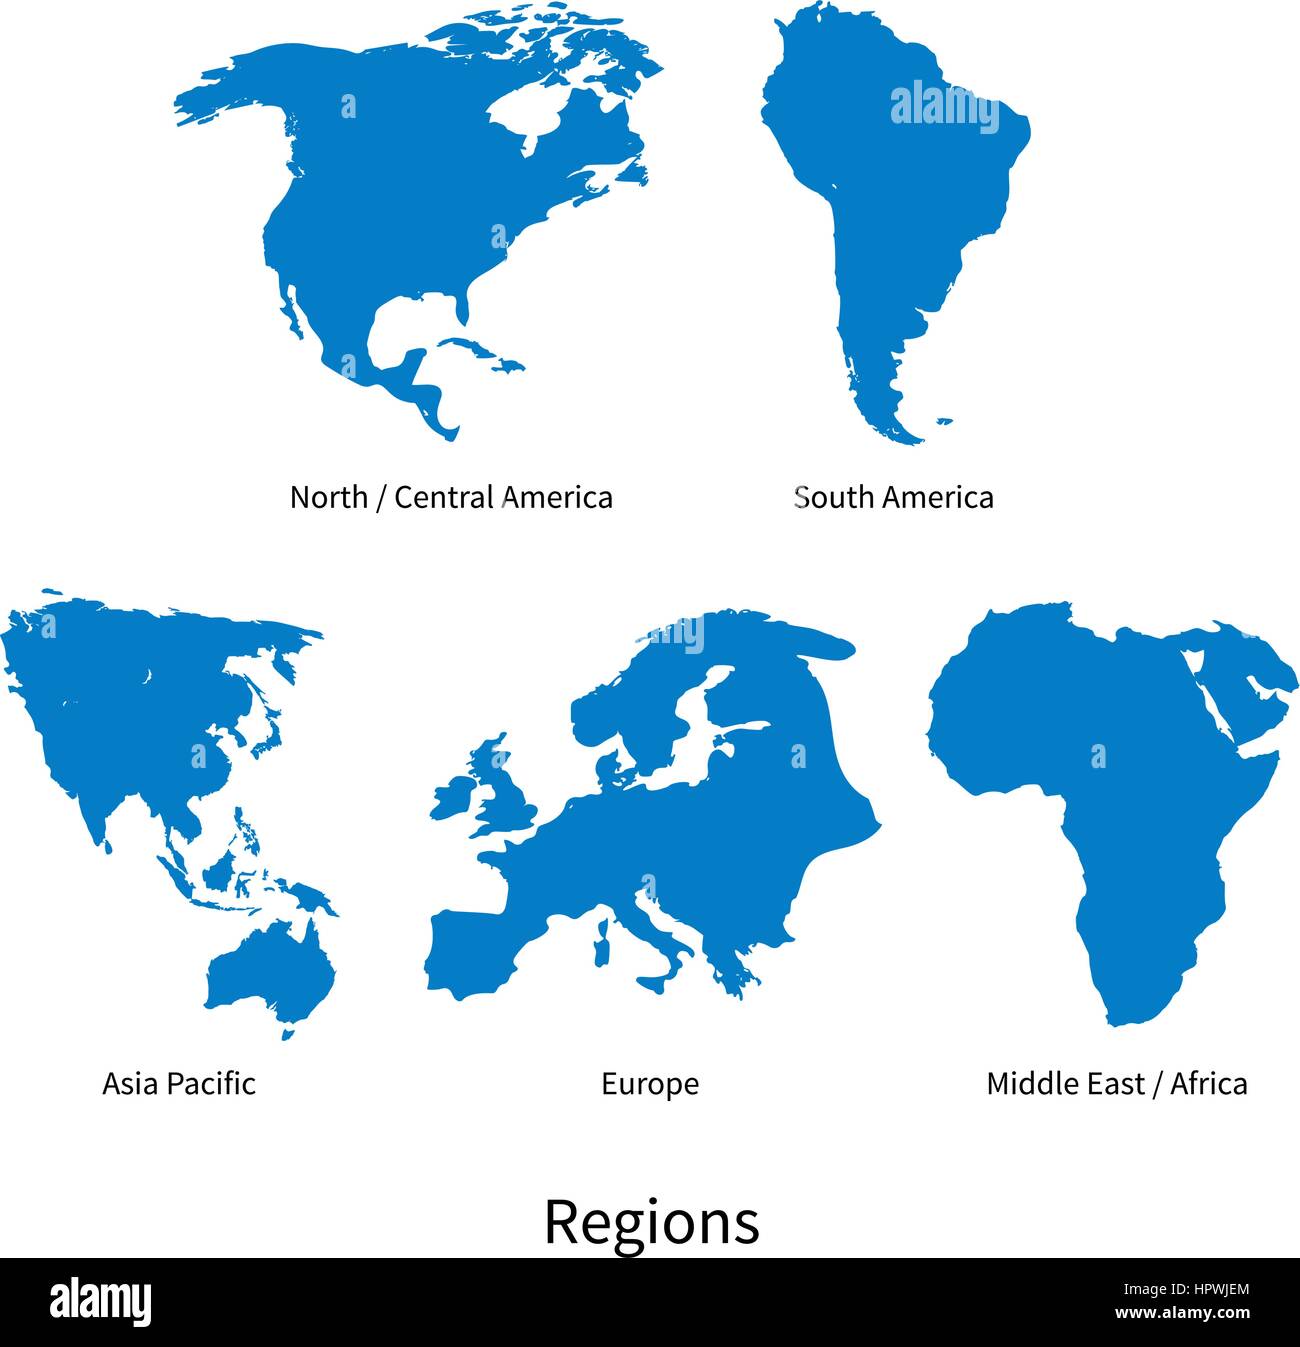 Vector detallado mapa de Norte, Centroamérica, Asia Pacífico, Europa, América del Sur, Oriente Medio y África Oriental, las regiones en blanco Ilustración del Vector